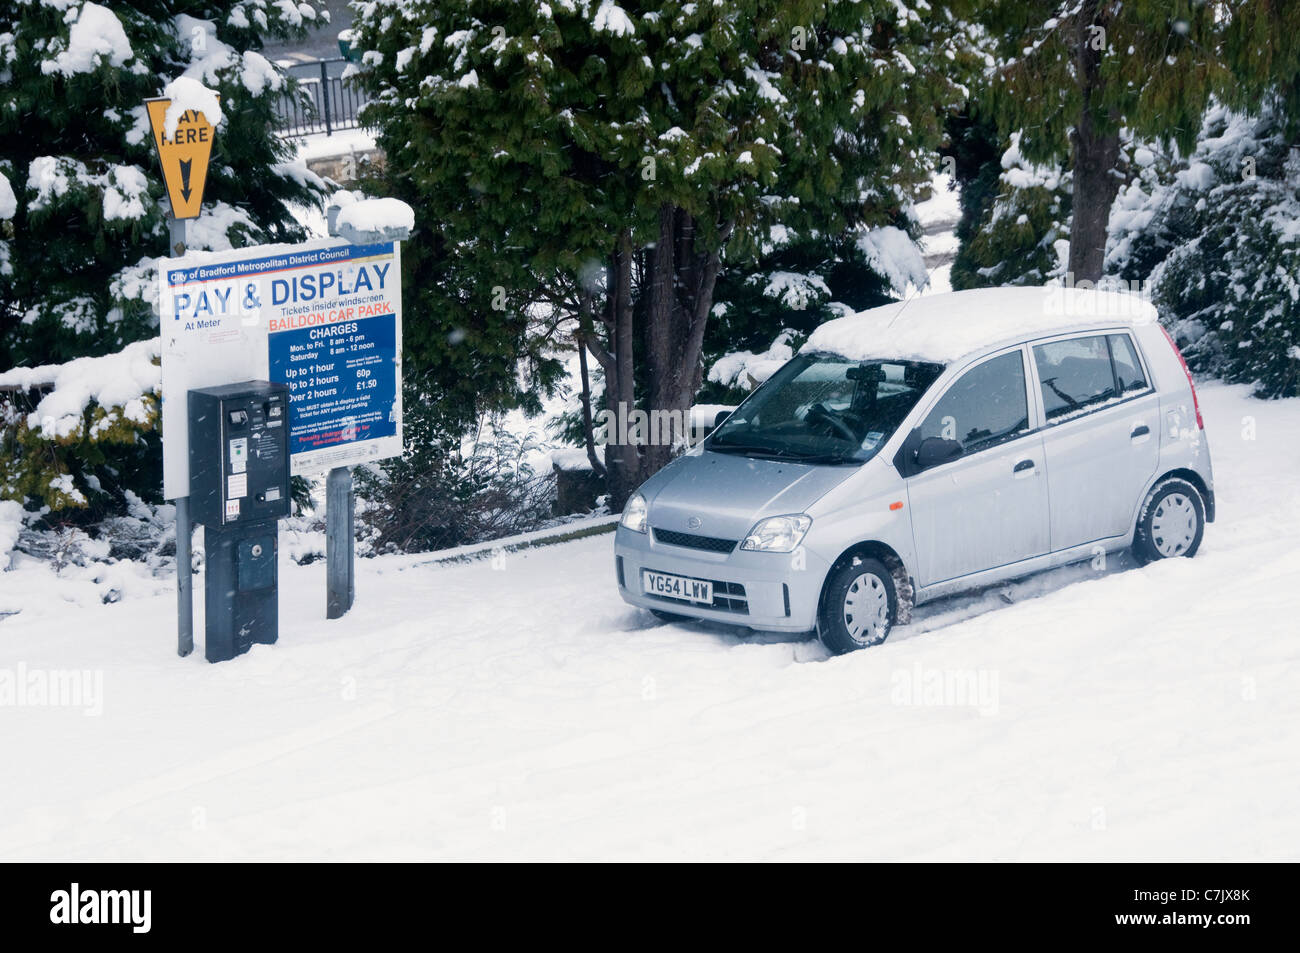 Aparcamiento cubierto de nieve de invierno (coche de plata estacionado en la nieve por pagar y la máquina de venta de entradas, lista de cargos en el cartel) - Baildon, West Yorkshire, Inglaterra, Reino Unido. Foto de stock